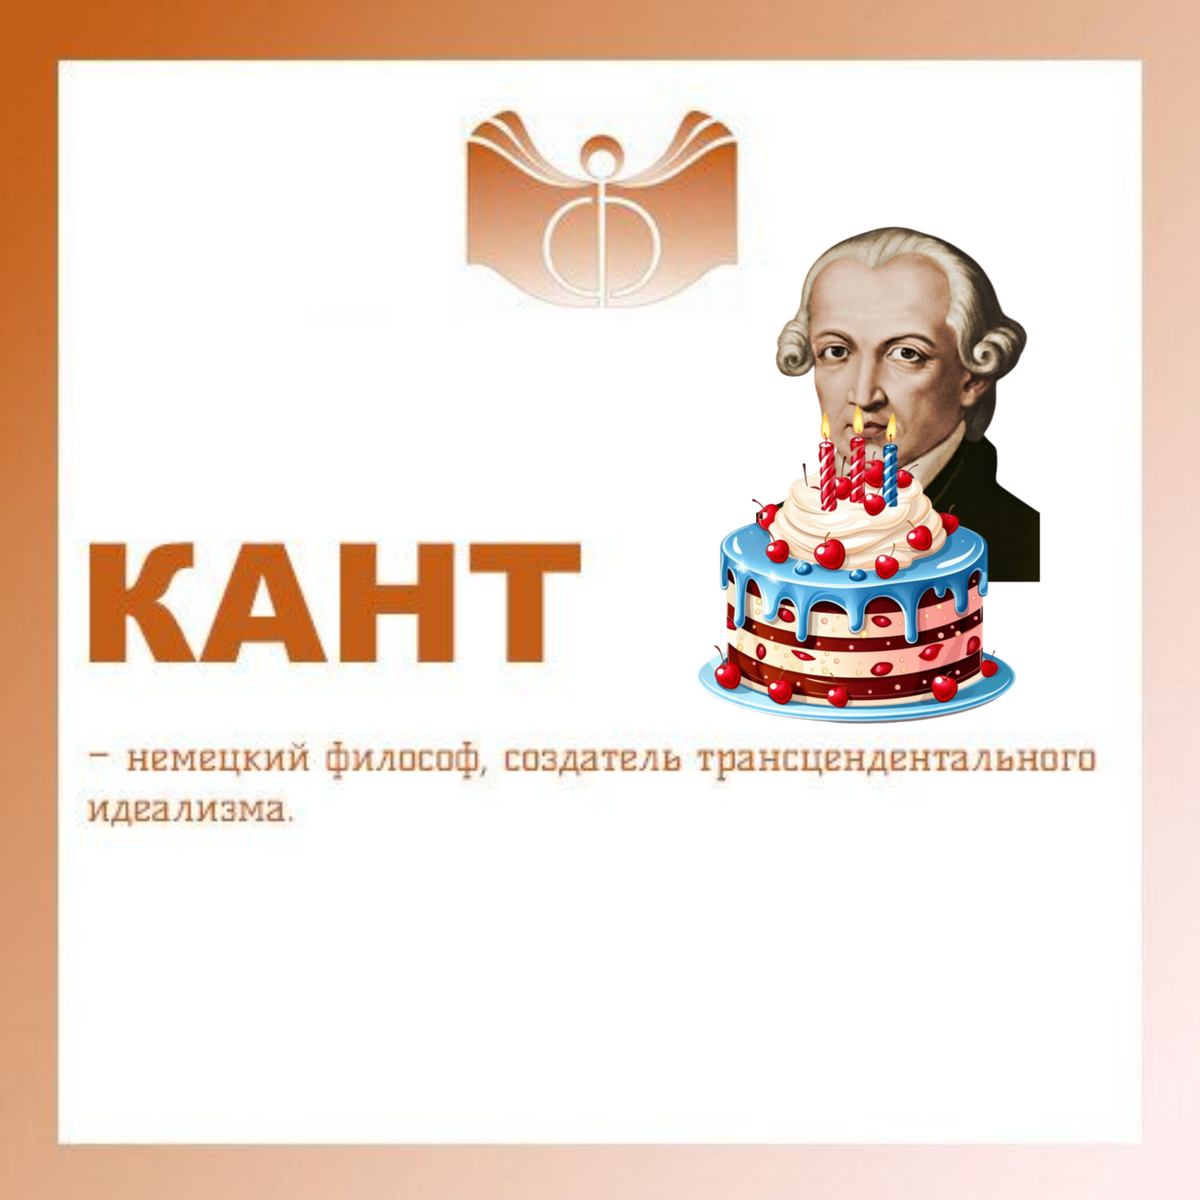 КАНТ (Kant) Иммануил (22 апреля 1724, Кёнигсберг, ныне Калининград – 12 февраля 1804, там же) – немецкий философ, создатель трансцендентального идеализма.